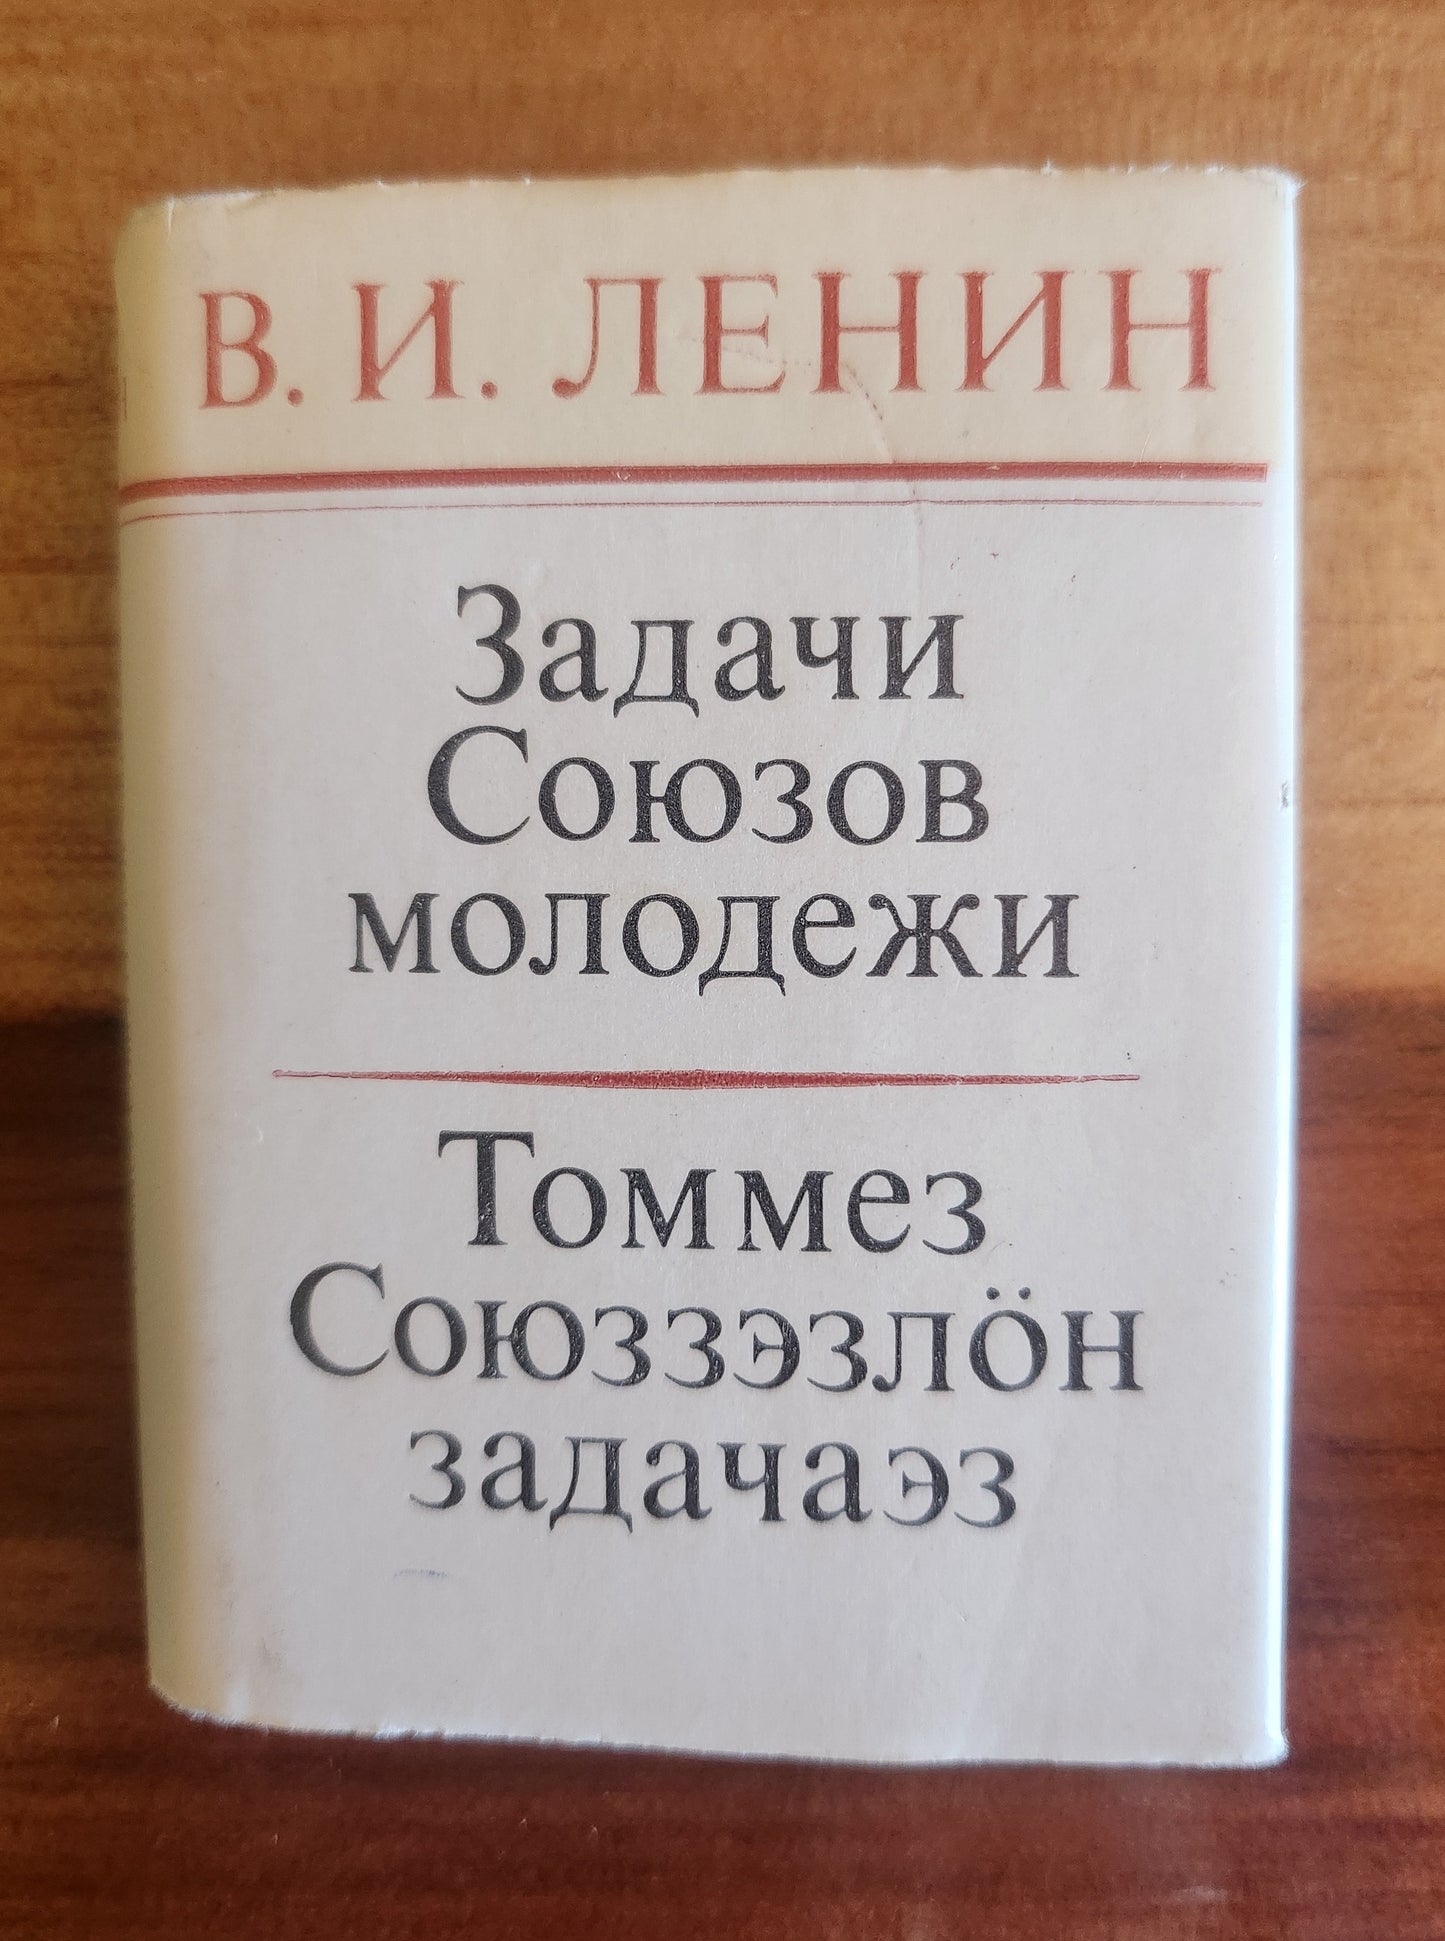 Vintage Soviet Books